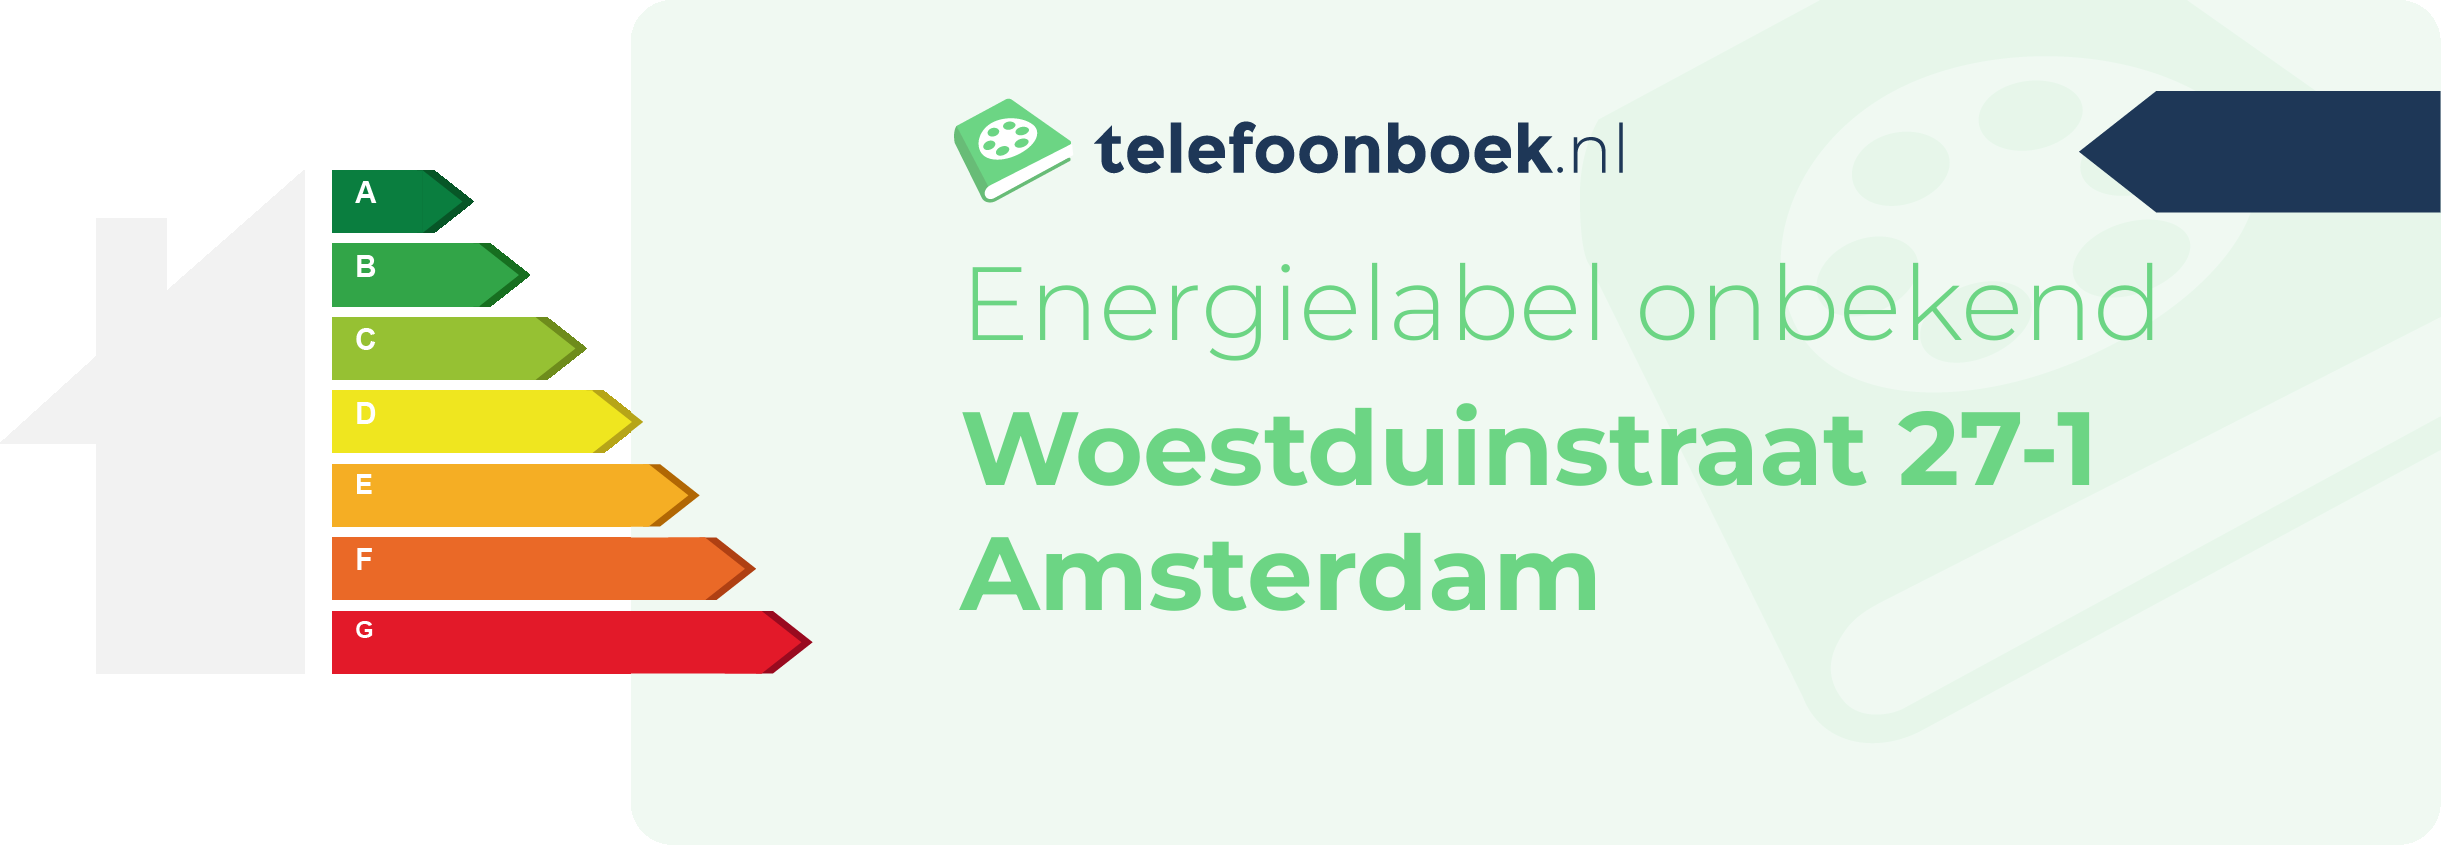 Energielabel Woestduinstraat 27-1 Amsterdam